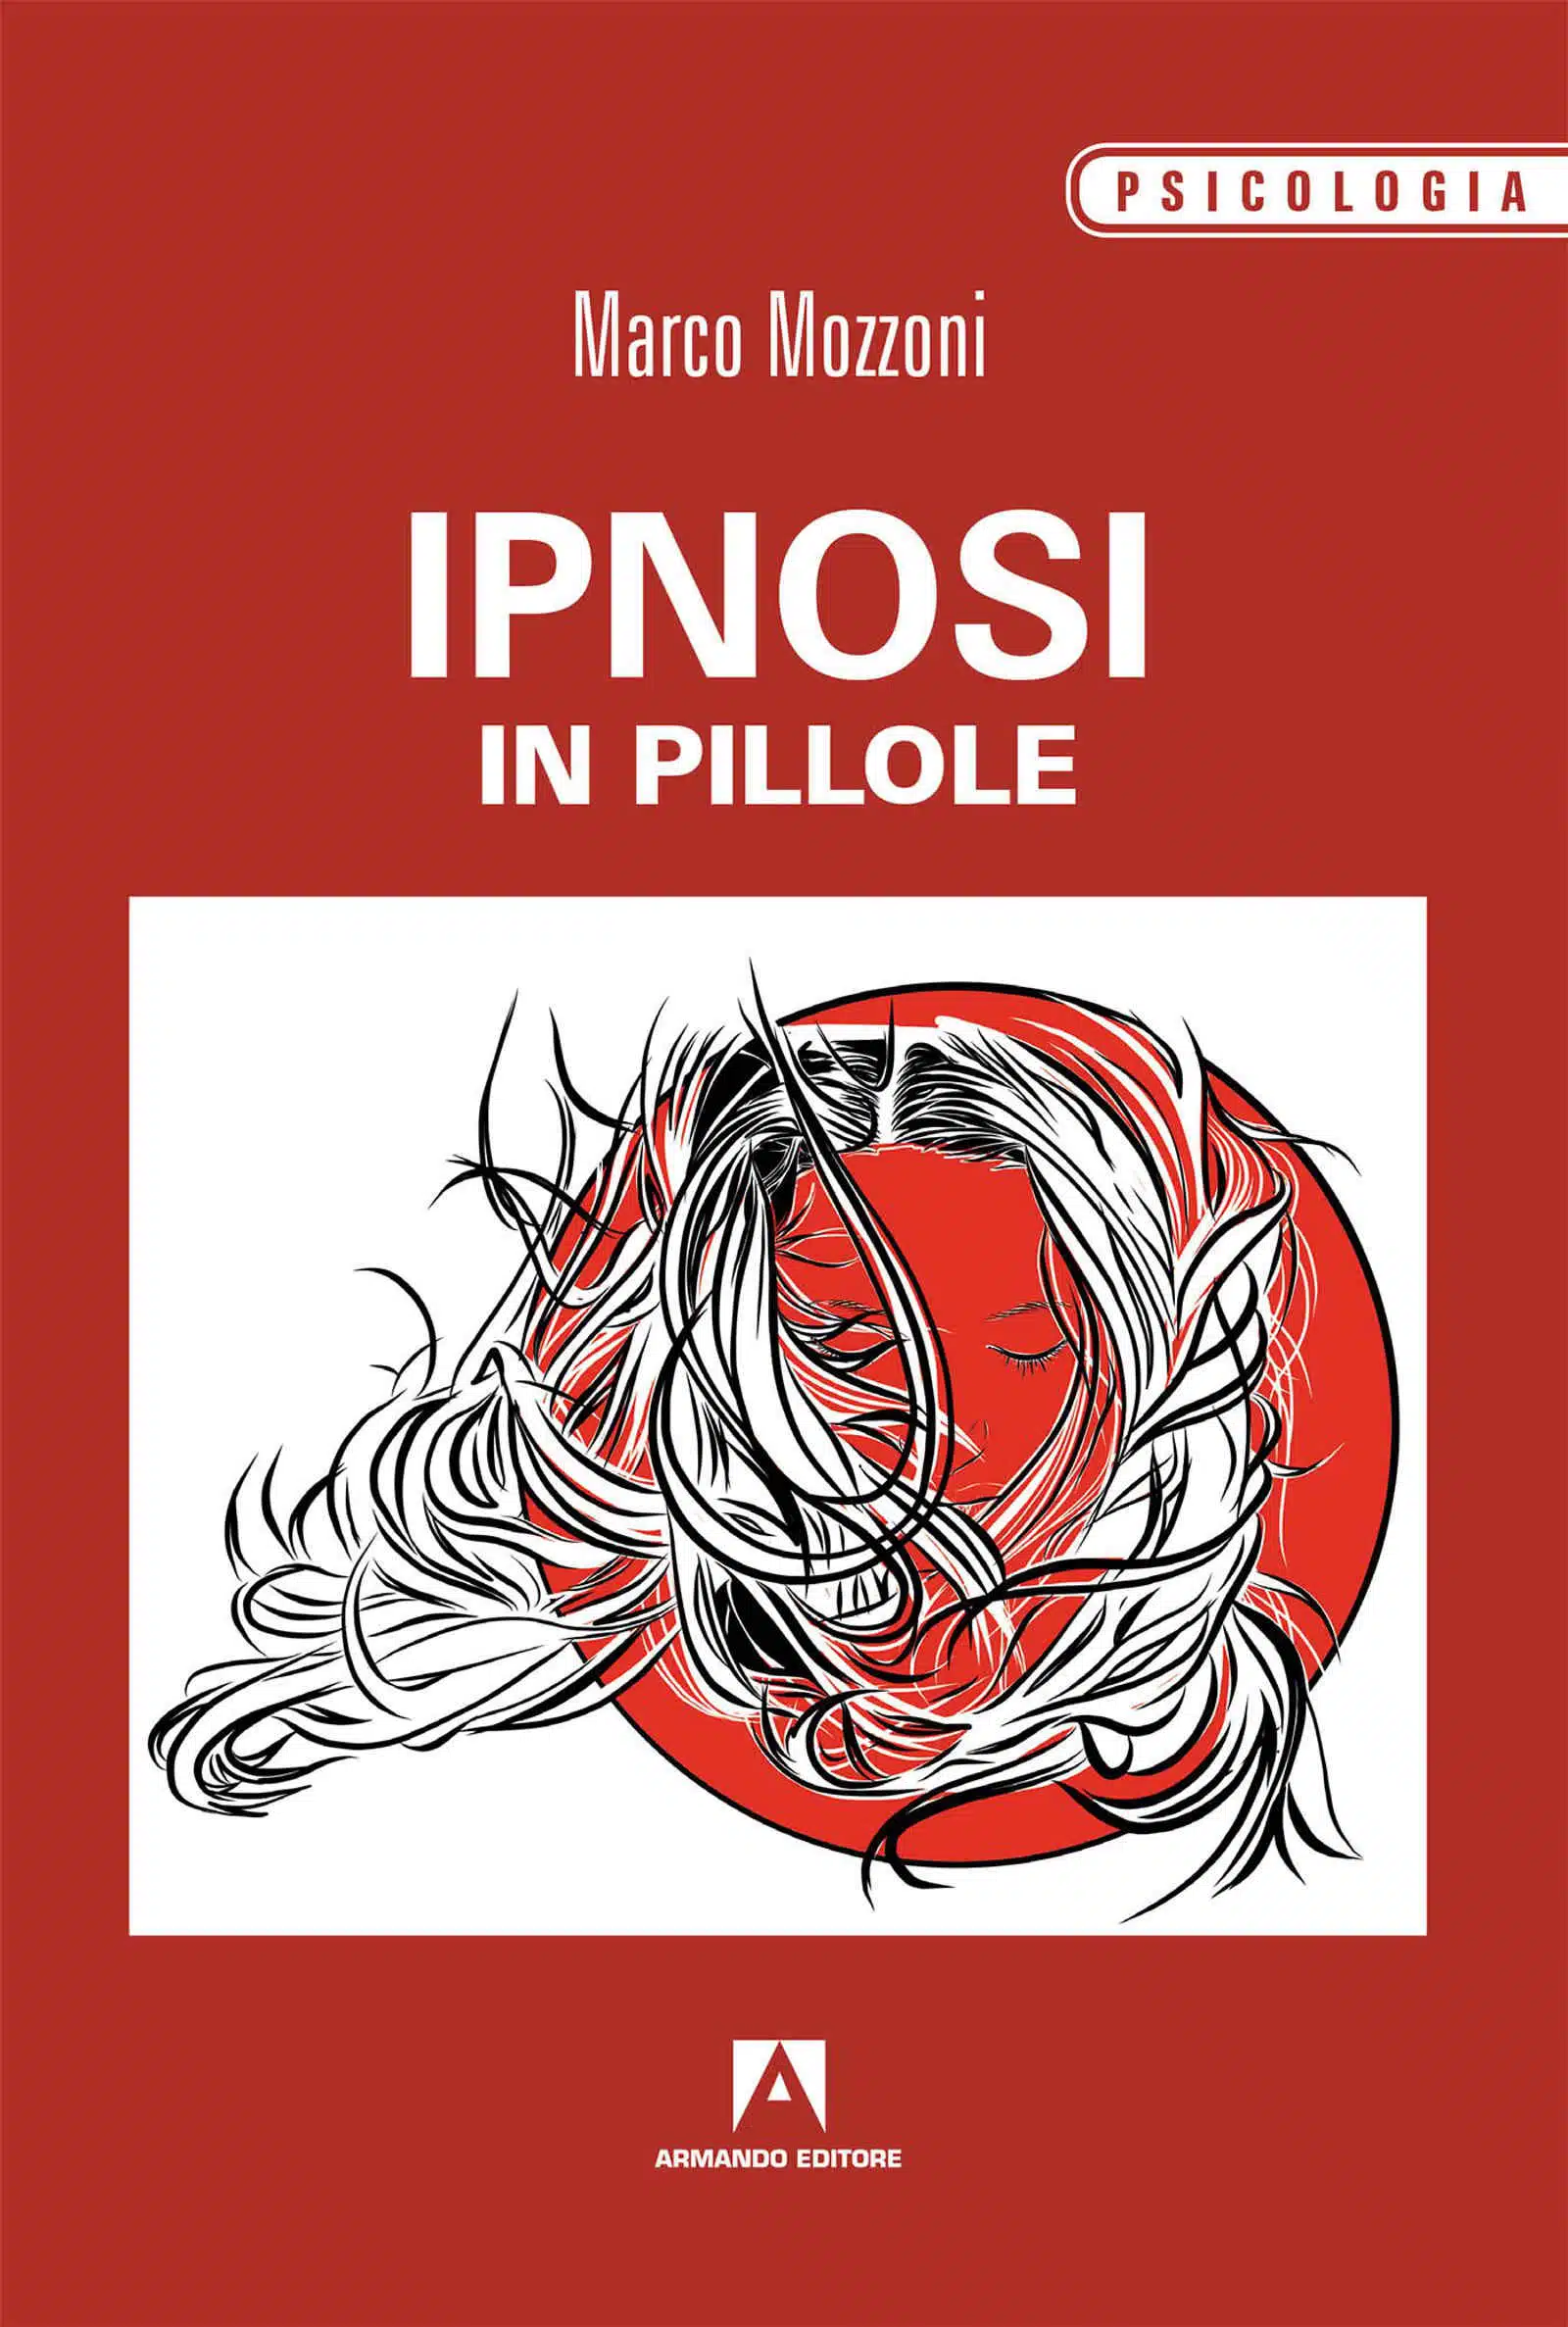 Ipnosi in pillole 2018 di Marco Mozzoni Recensione del libro featured